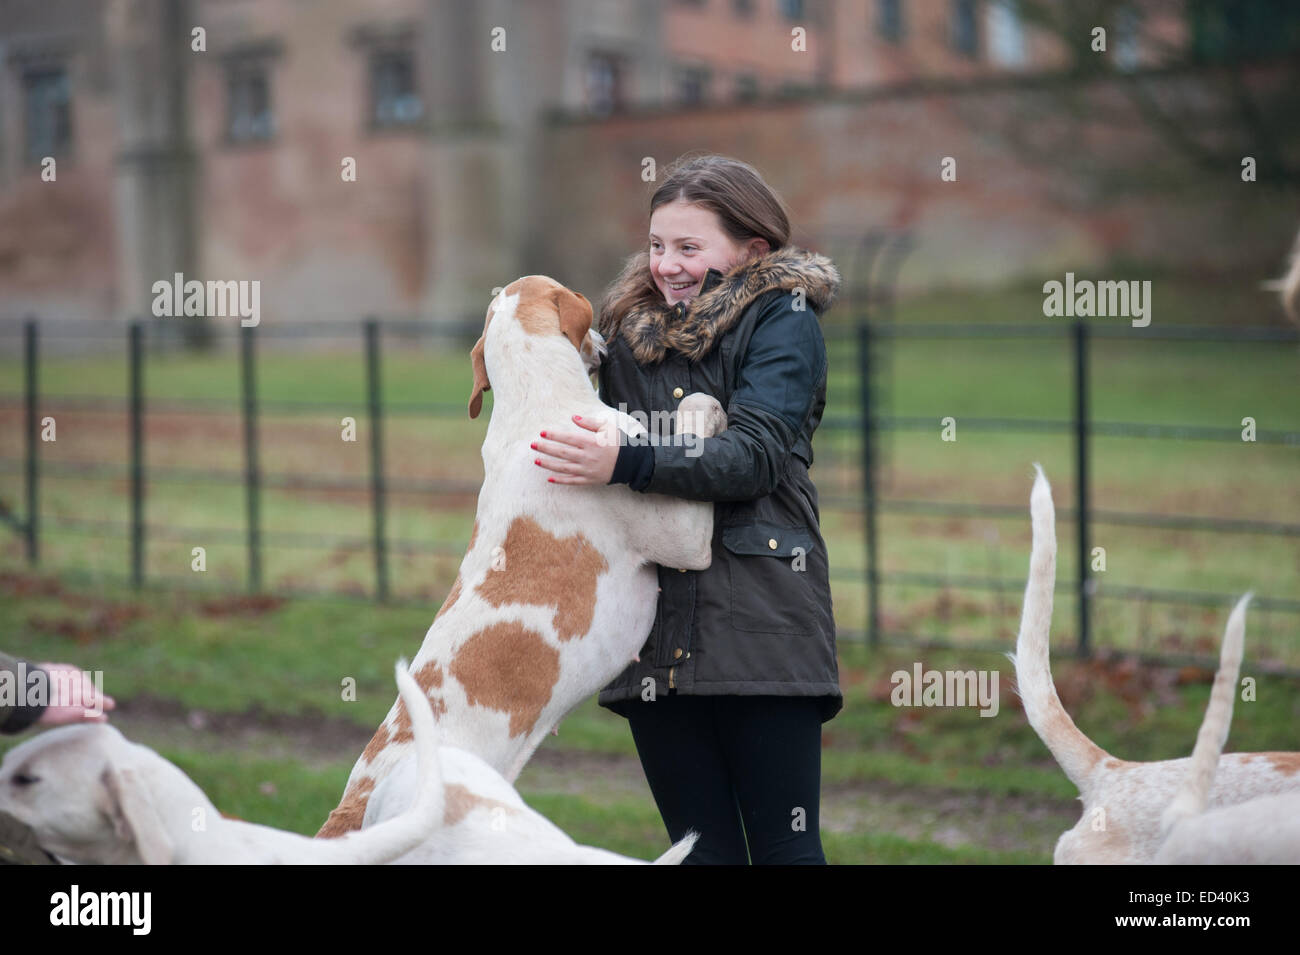 Mädchen wird von Fox Hound geleckt Hund Staffordshire, UK. 26. Dezember 2014. Jährliche Boxing Day Treffen der Meynell und Süden Mitarbeiter Jagd in Blethfield Hall, Staffordshire Stockfoto